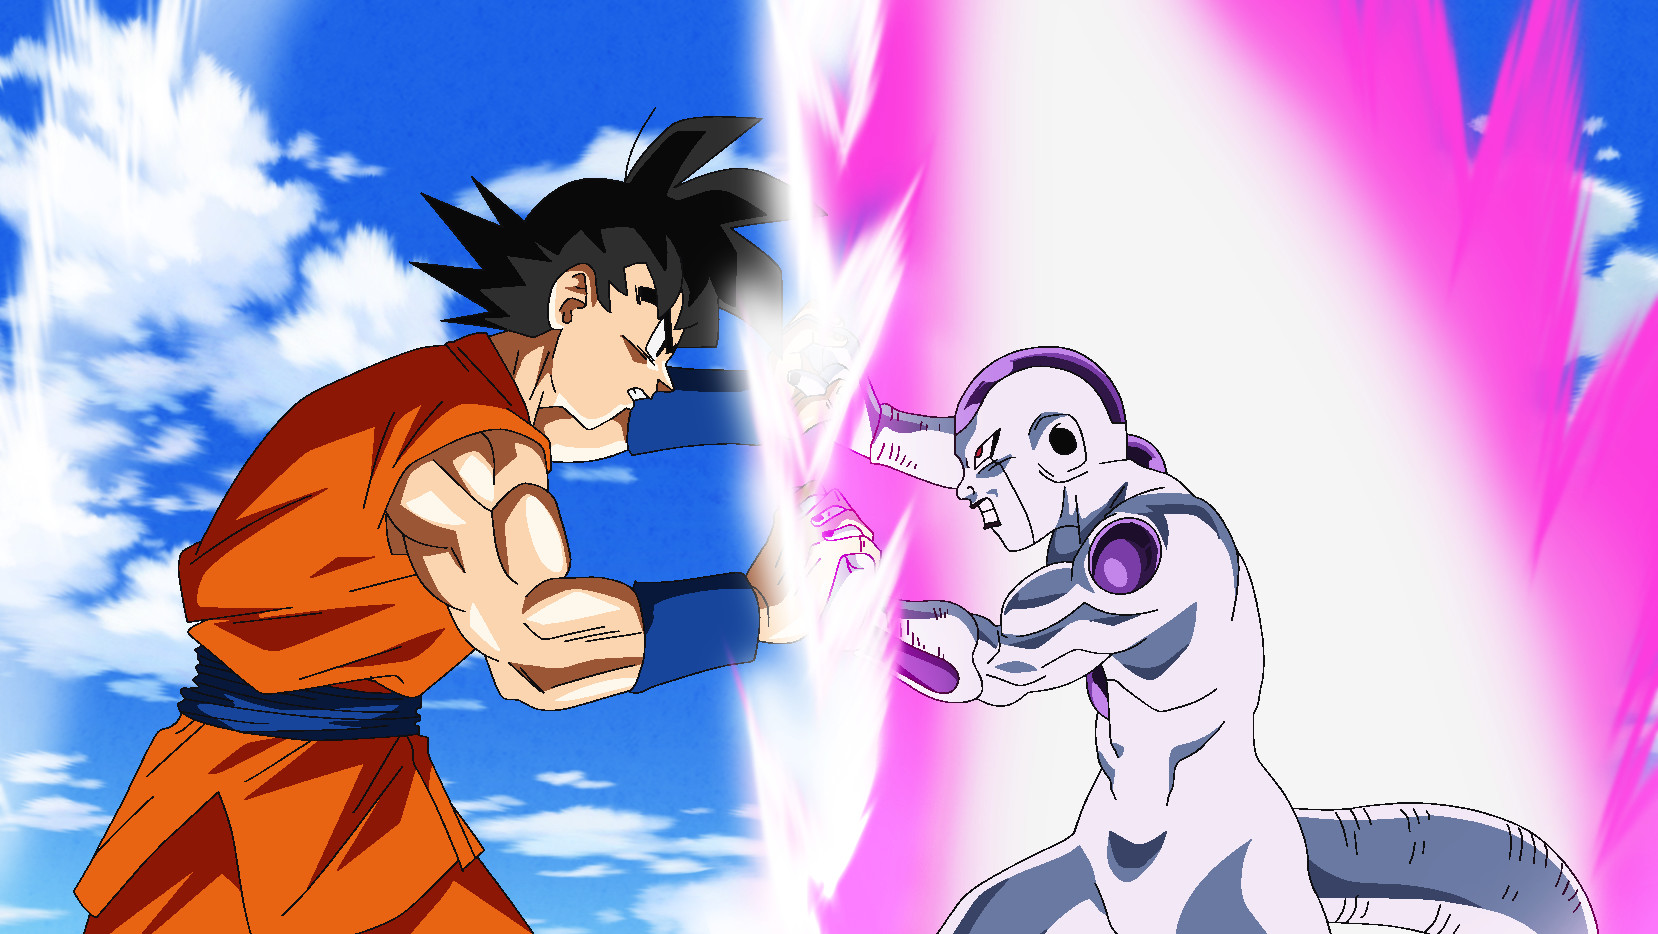 Watch Dragon Ball Super Season 1 Episode 24 Sub & Dub | Anime Simulcast | Funimation